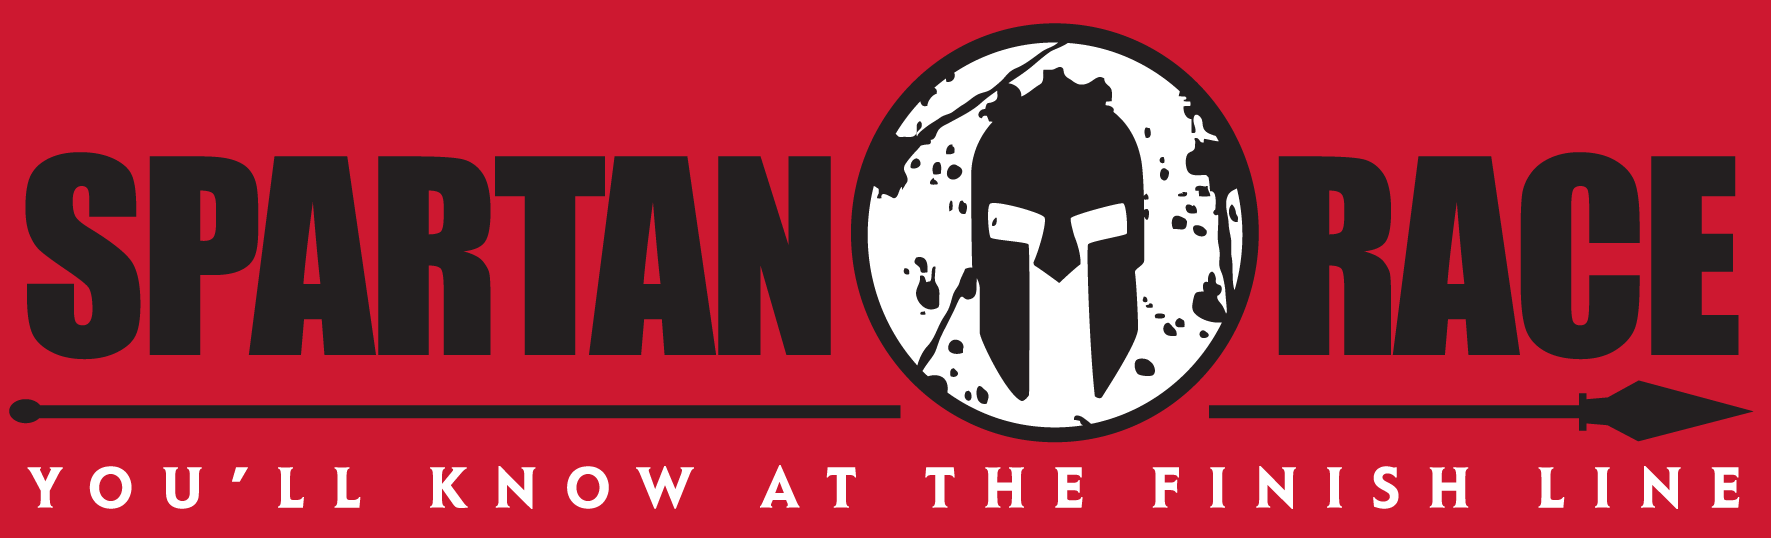 Free download Spartan Race Logo Spartan race 2014 [1771x538] for your Desktop, Mobile & Tablet. Explore Spartan Race Wallpaper. Spartan Wallpaper, Spartan Helmet Wallpaper